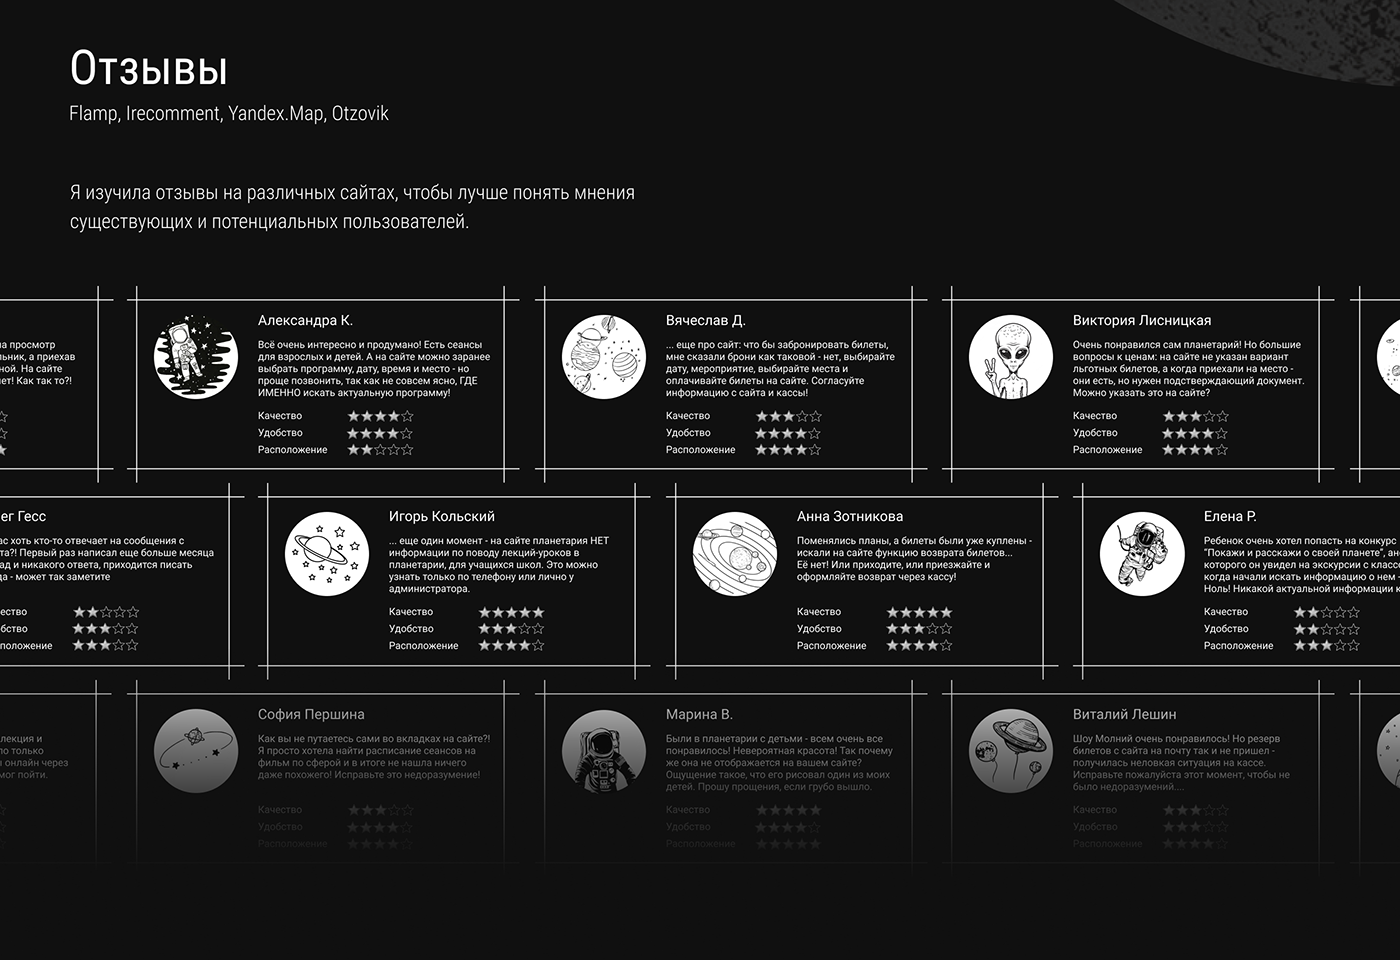 planetarium redesign redesign website UX Research ux redesign siberian redesign concept redesign reseach ux planet UX UI Redesign